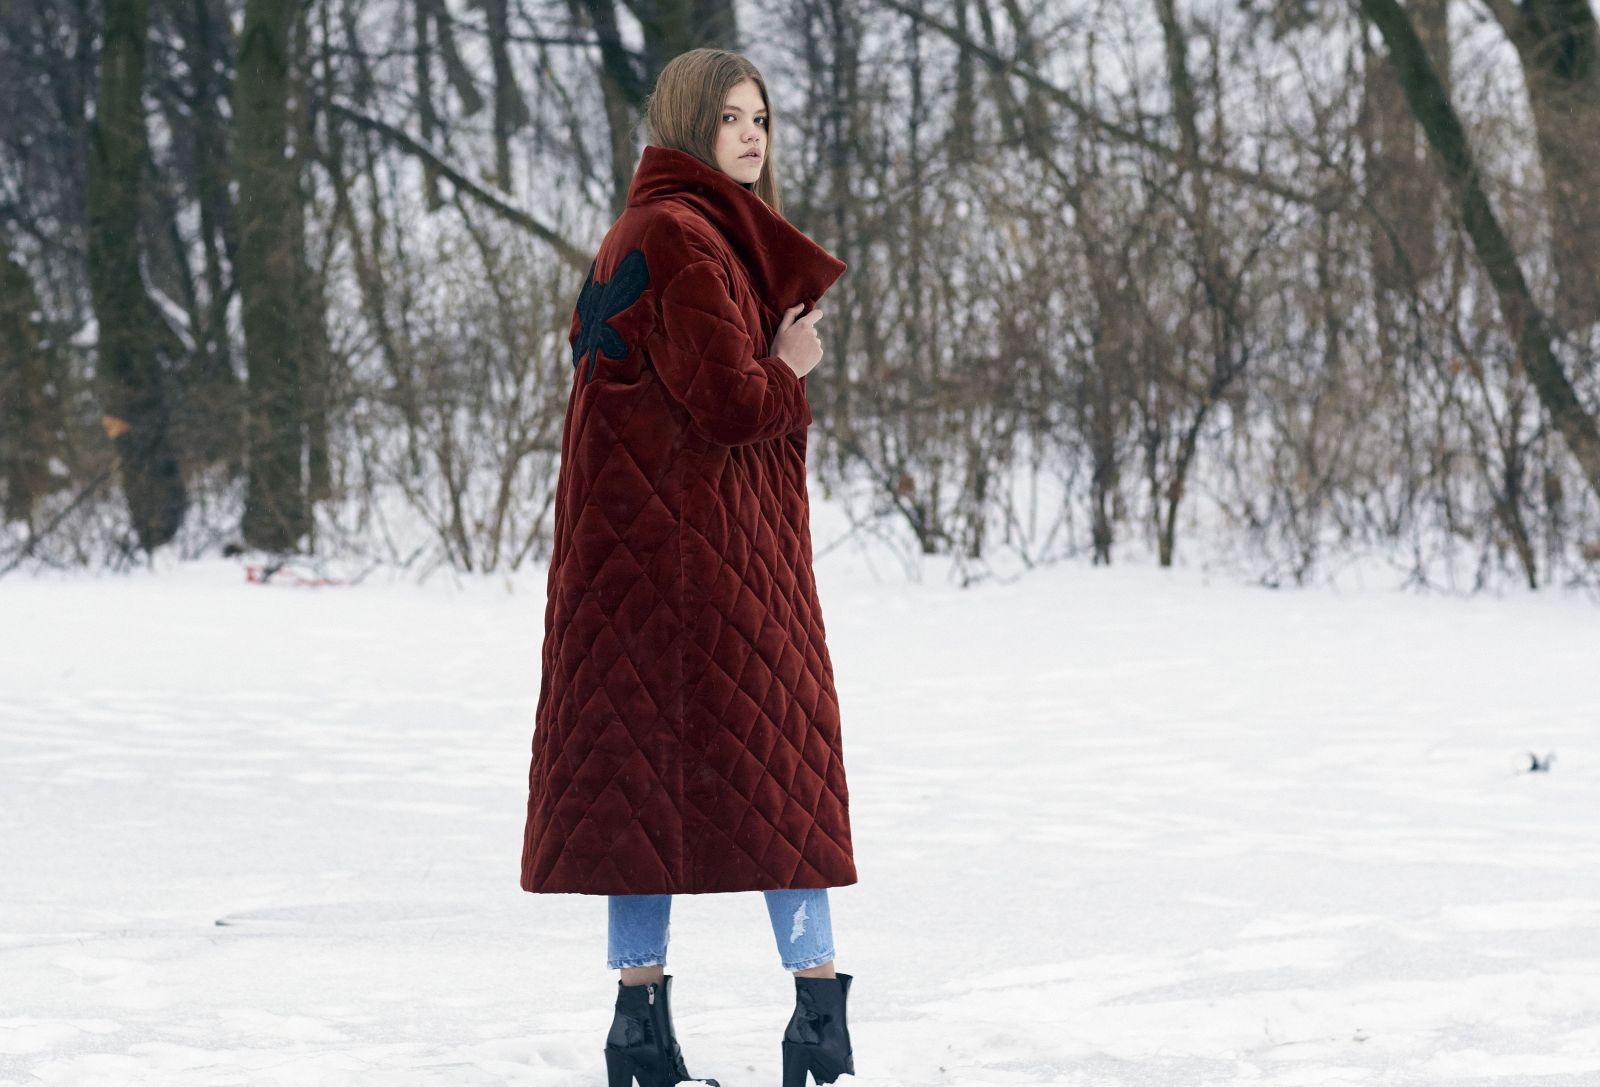 Украинские модницы показали тренды уличного стиля на Неделе моды (ФОТО)